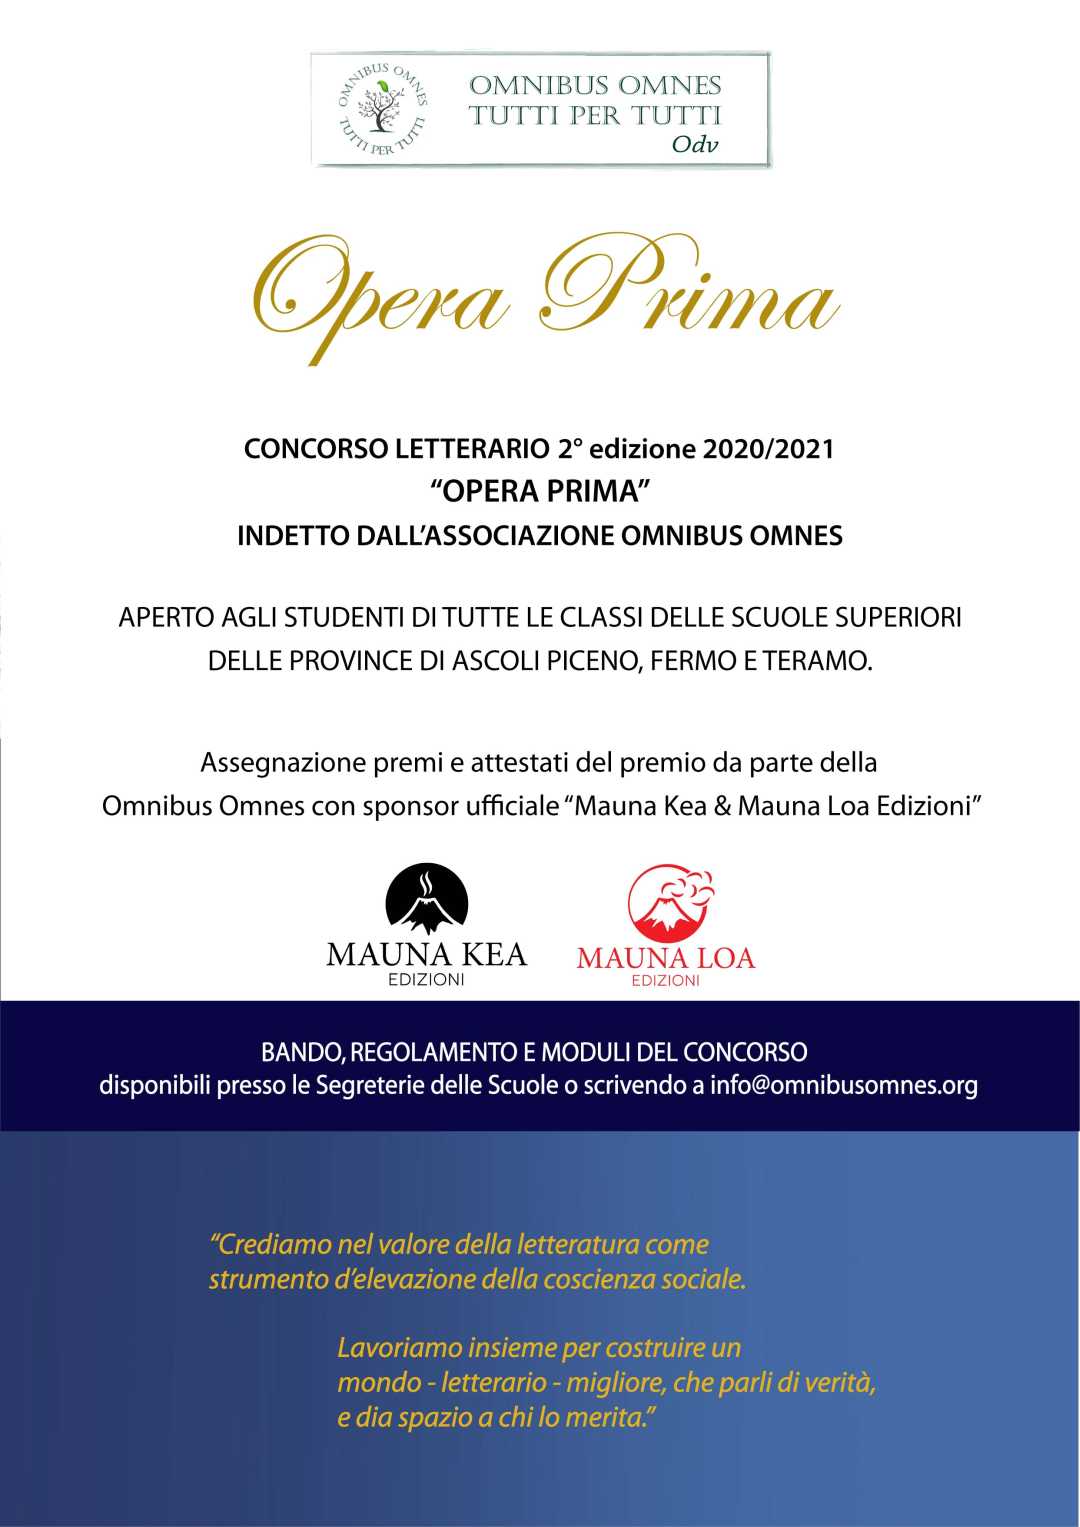 Il concorso letterario Opera Prima della Omnibus apre agli studenti delle province di Ascoli, Fermo e Teramo